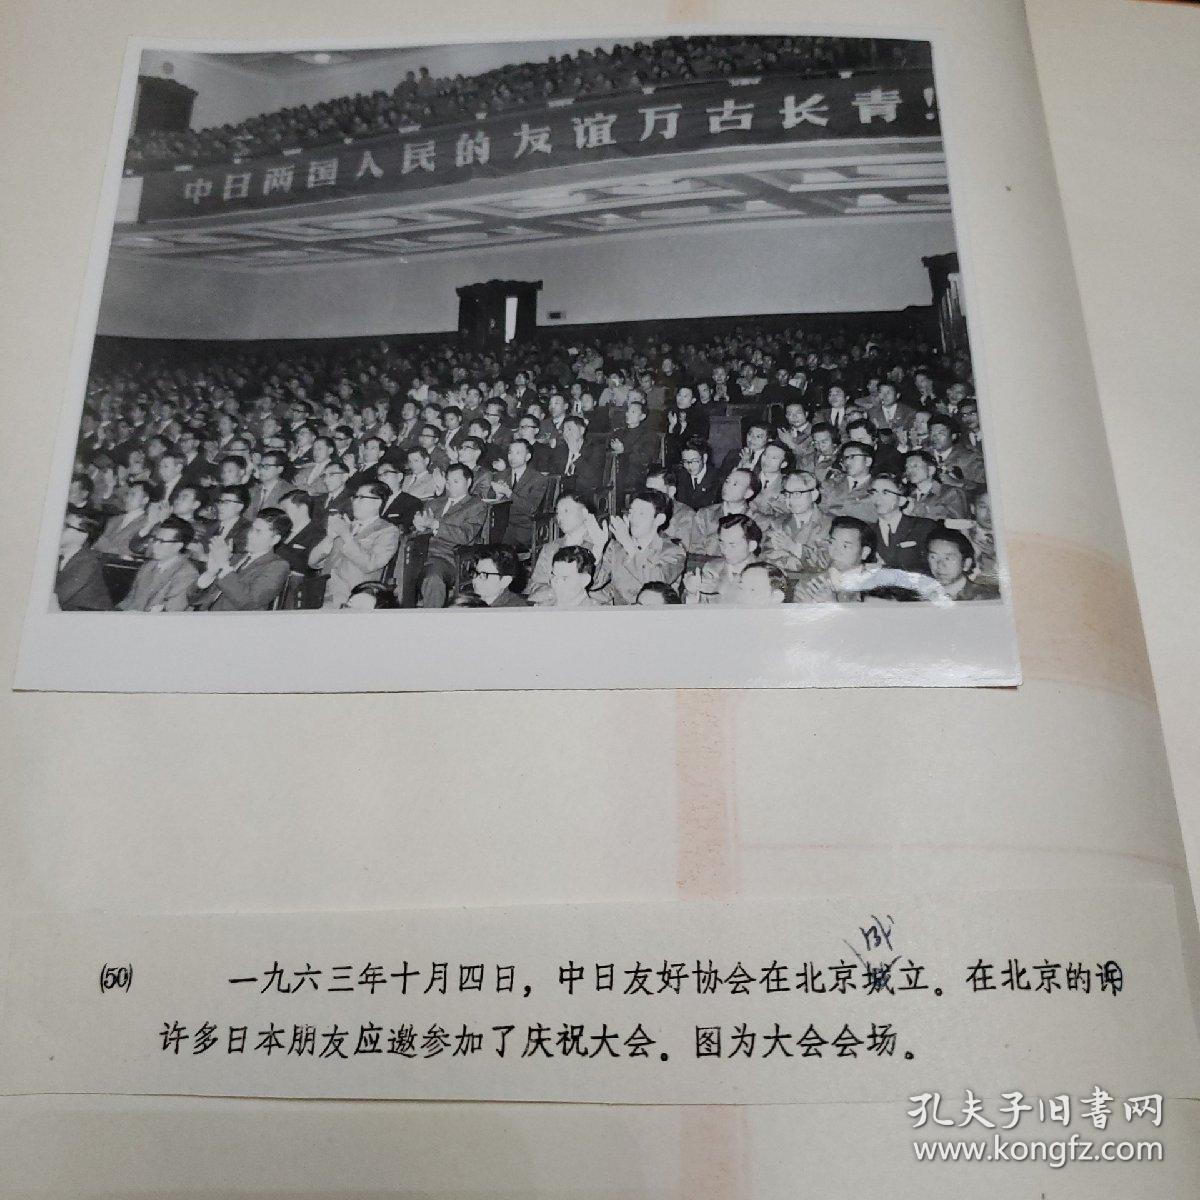 老照片。1963年10月4日中日友好协会在北京成立。